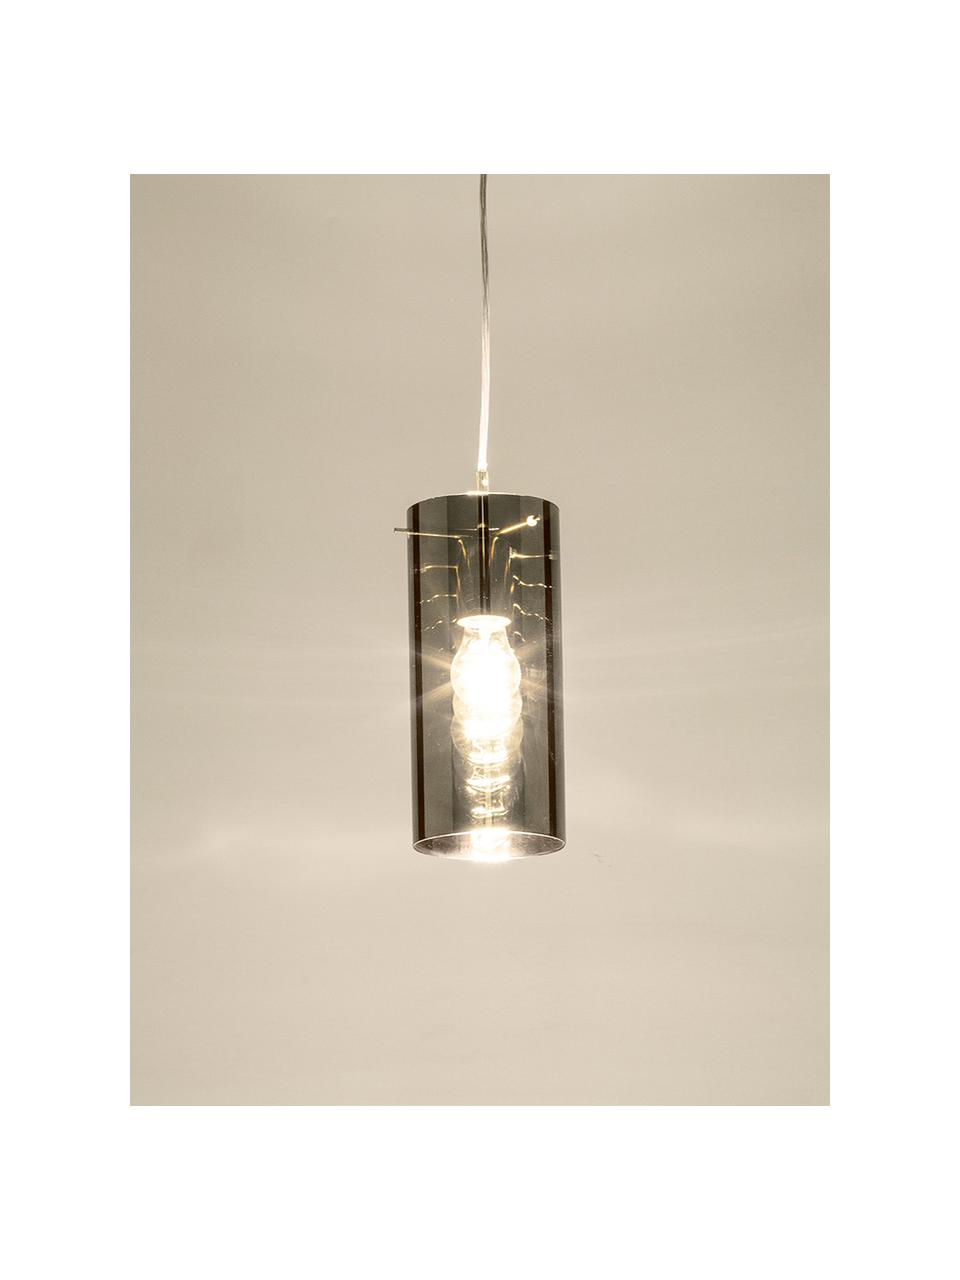 Hanglamp Storm van glas, Lampenkap: gecoat glas, Lampenkap: zilvergrijs, transparant. Bevestiging en baldakijn: nikkelkleurig, Ø 12 cm